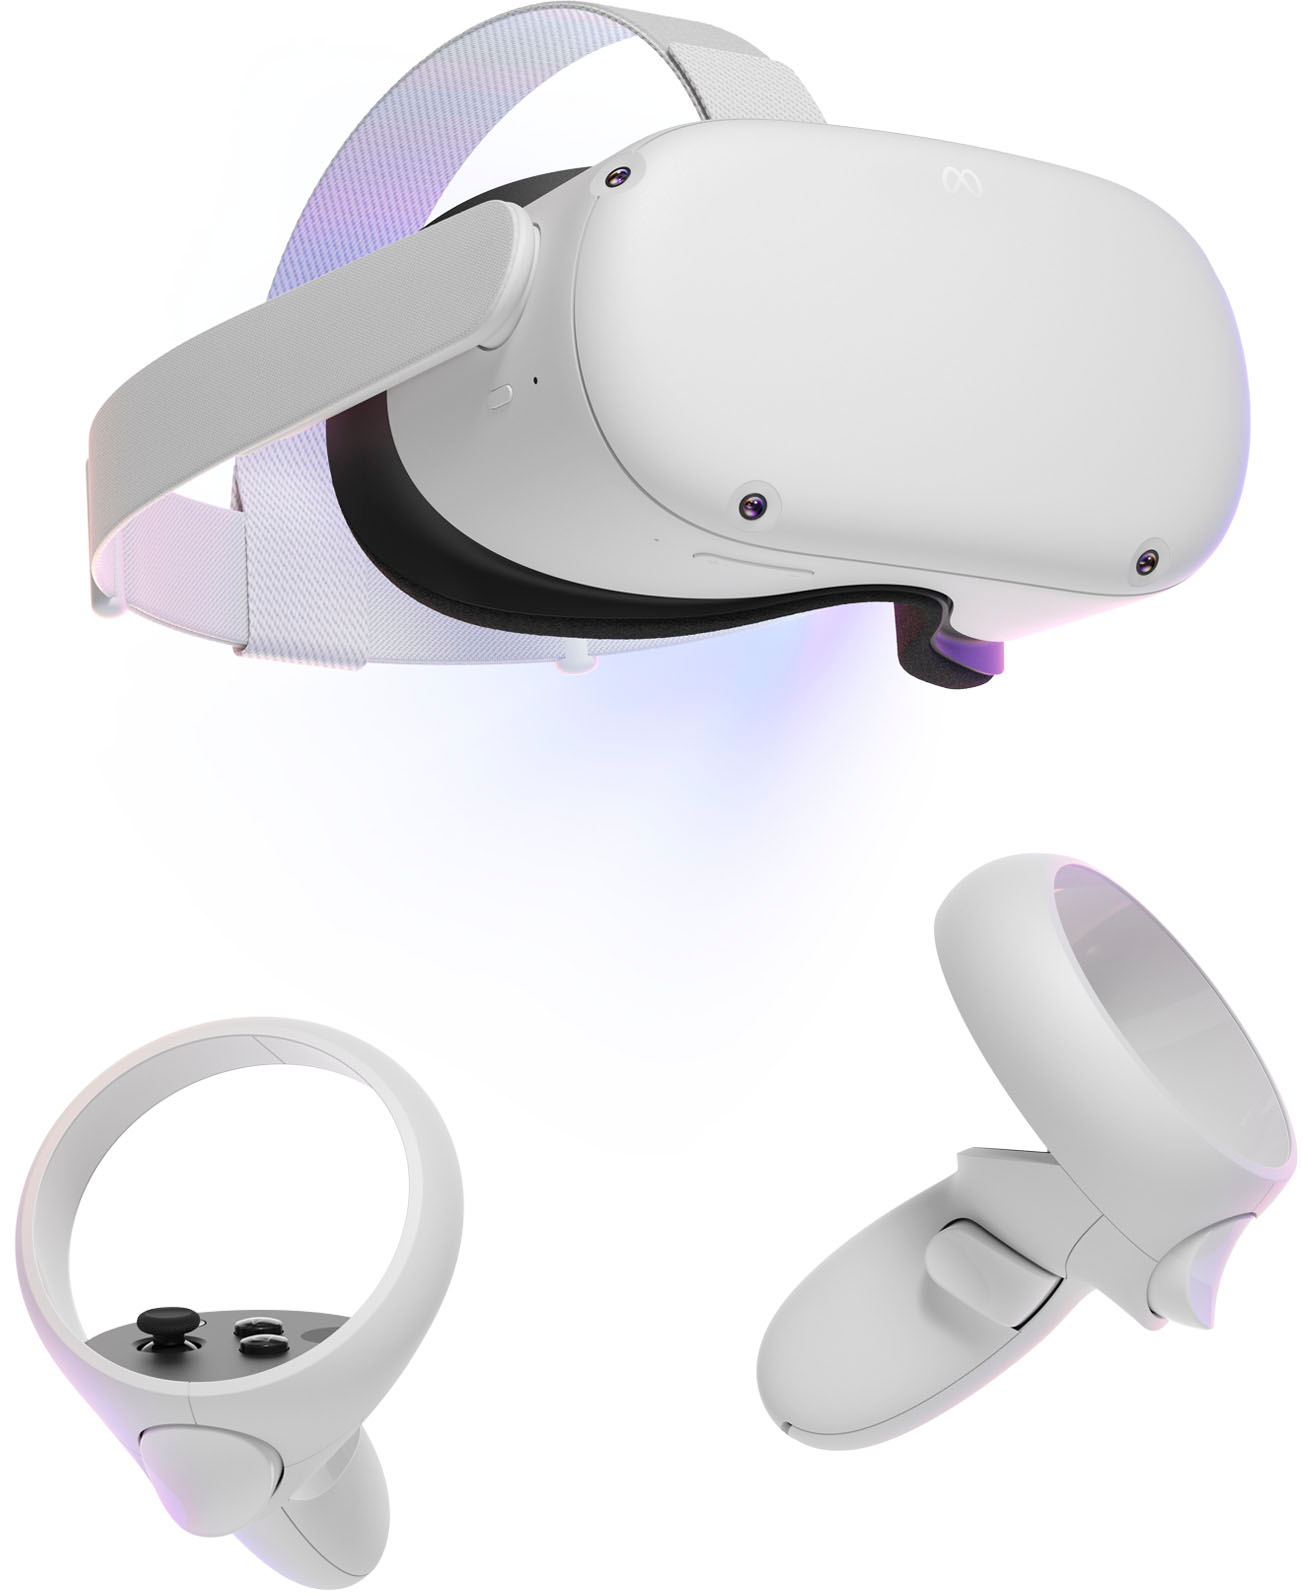 VR  quest2 その他 テレビゲーム 本・音楽・ゲーム 激安オフライン販売